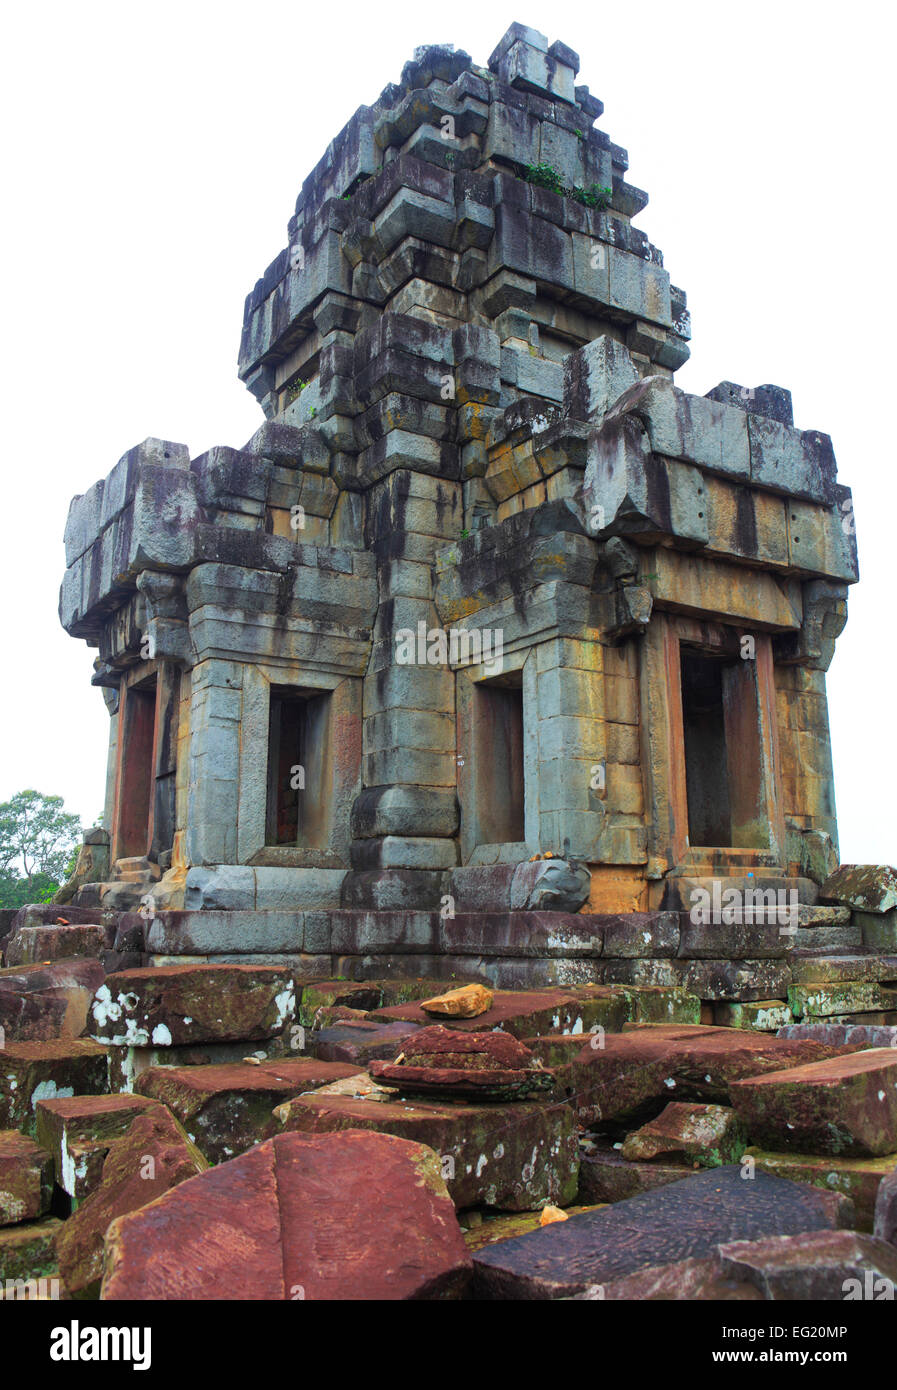 Ta Keo temple (10th century), Angkor, Cambodia Stock Photo